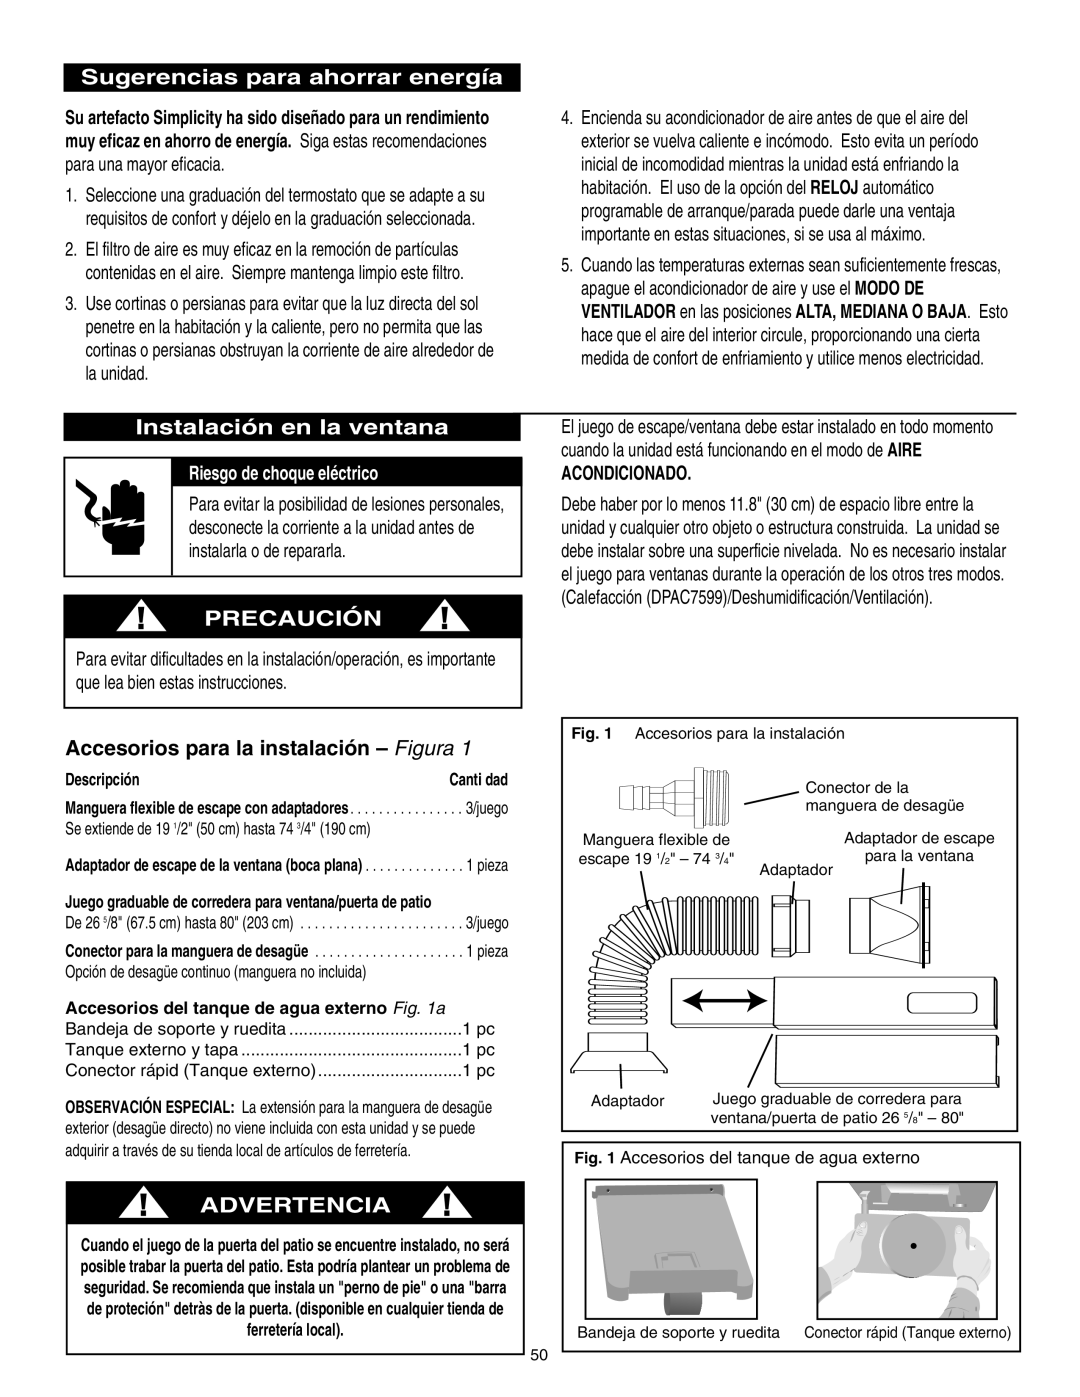 Danby SPAC8499 manual Sugerencias para ahorrar energía, Instalación en la ventana, Precaución, Advertencia, Acondicionado 